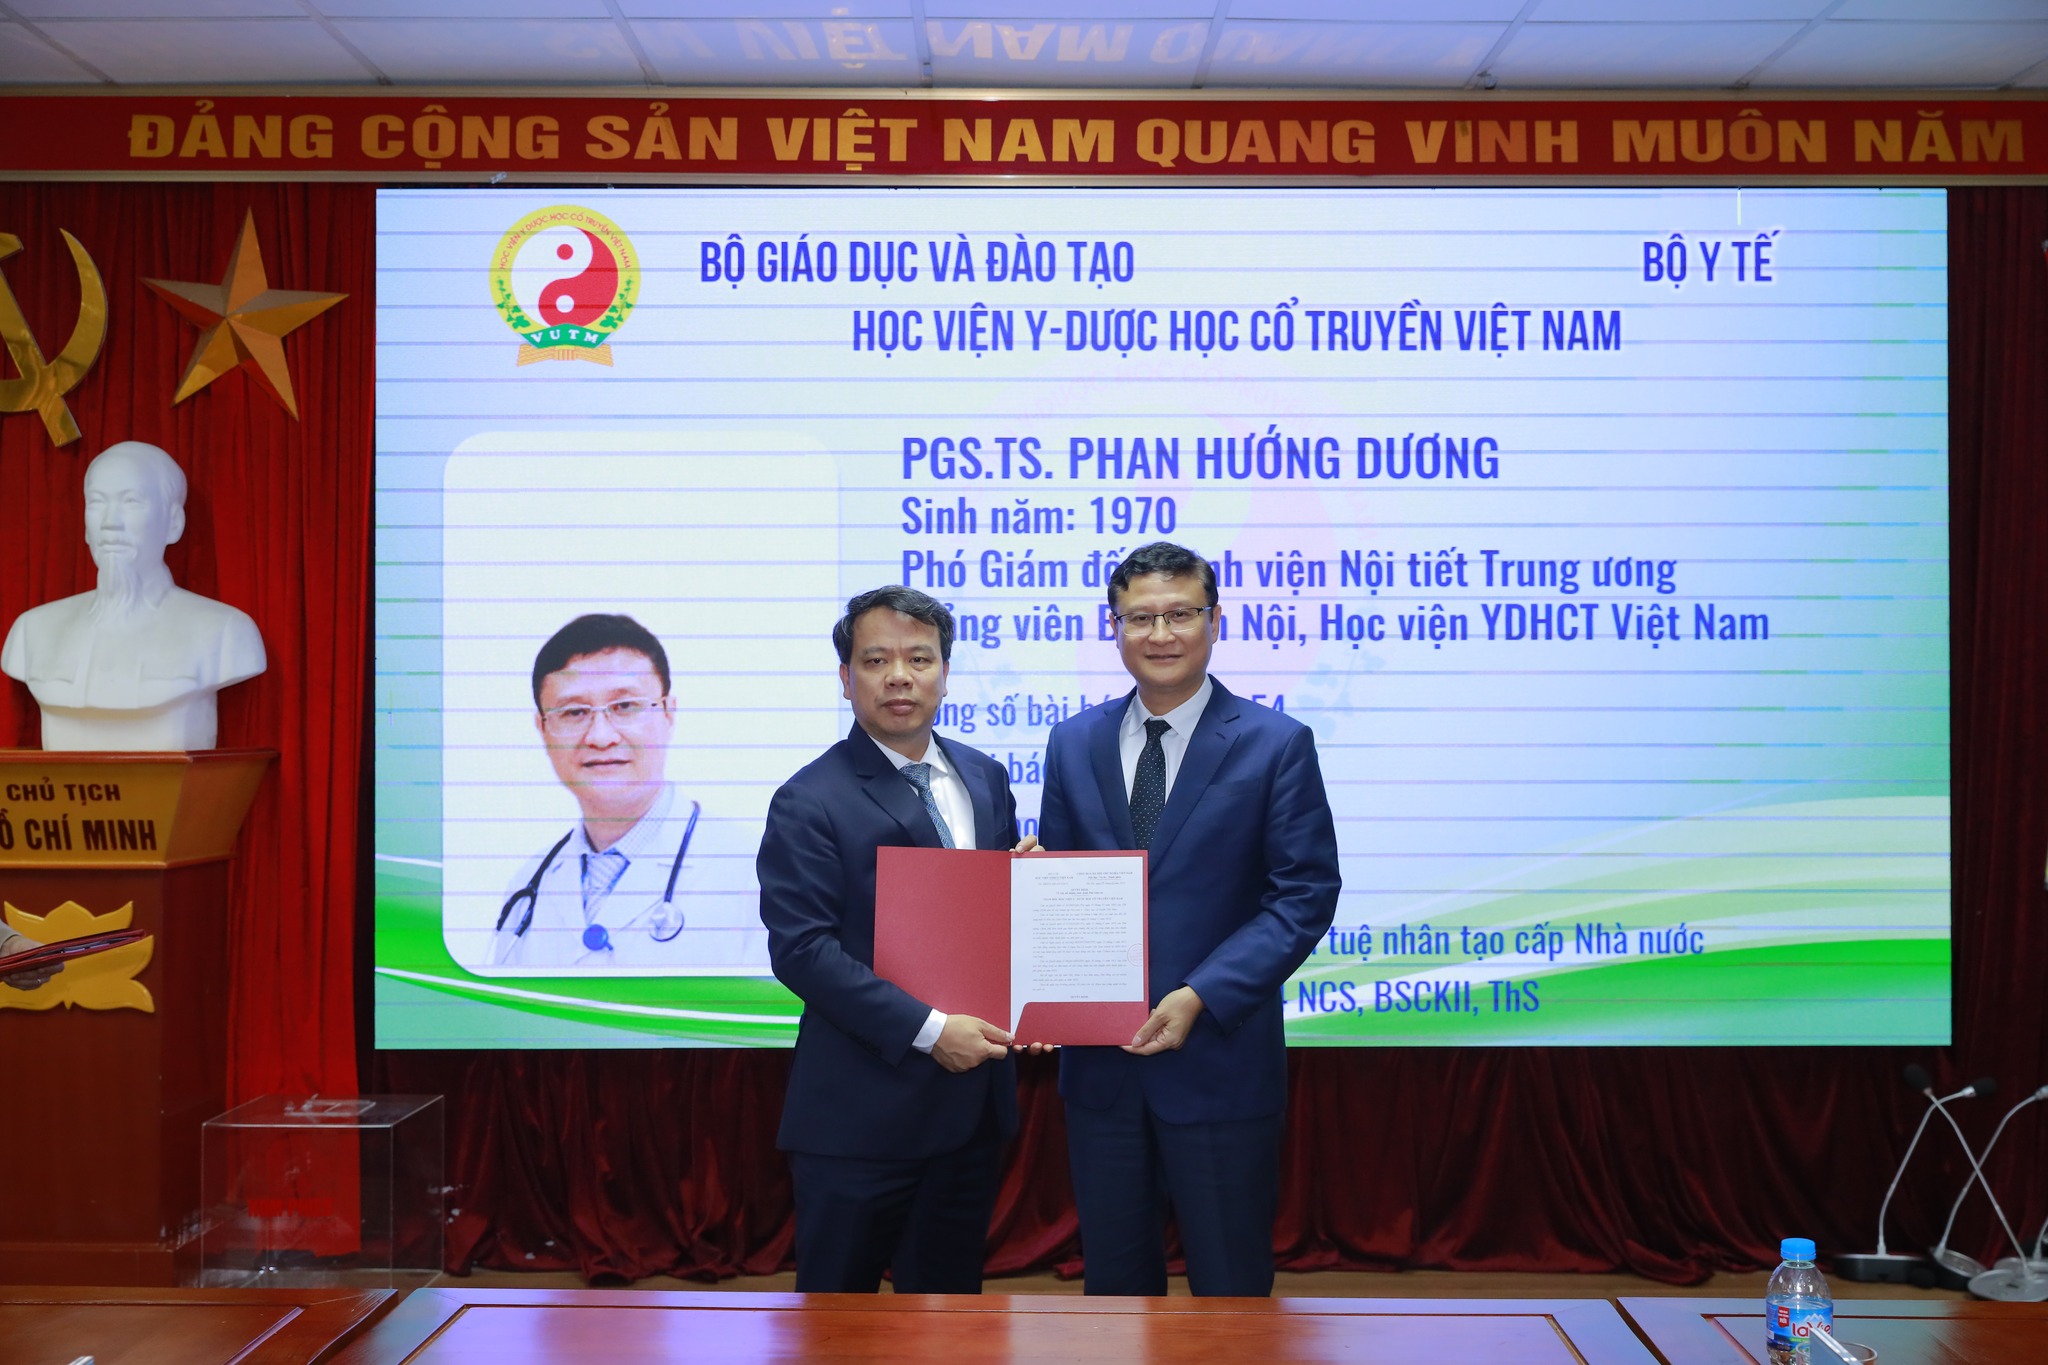 Chúc mừng Tiến sỹ, bác sỹ Phan Hướng Dương được công nhận đạt tiêu chuẩn chức danh Phó Giáo sư